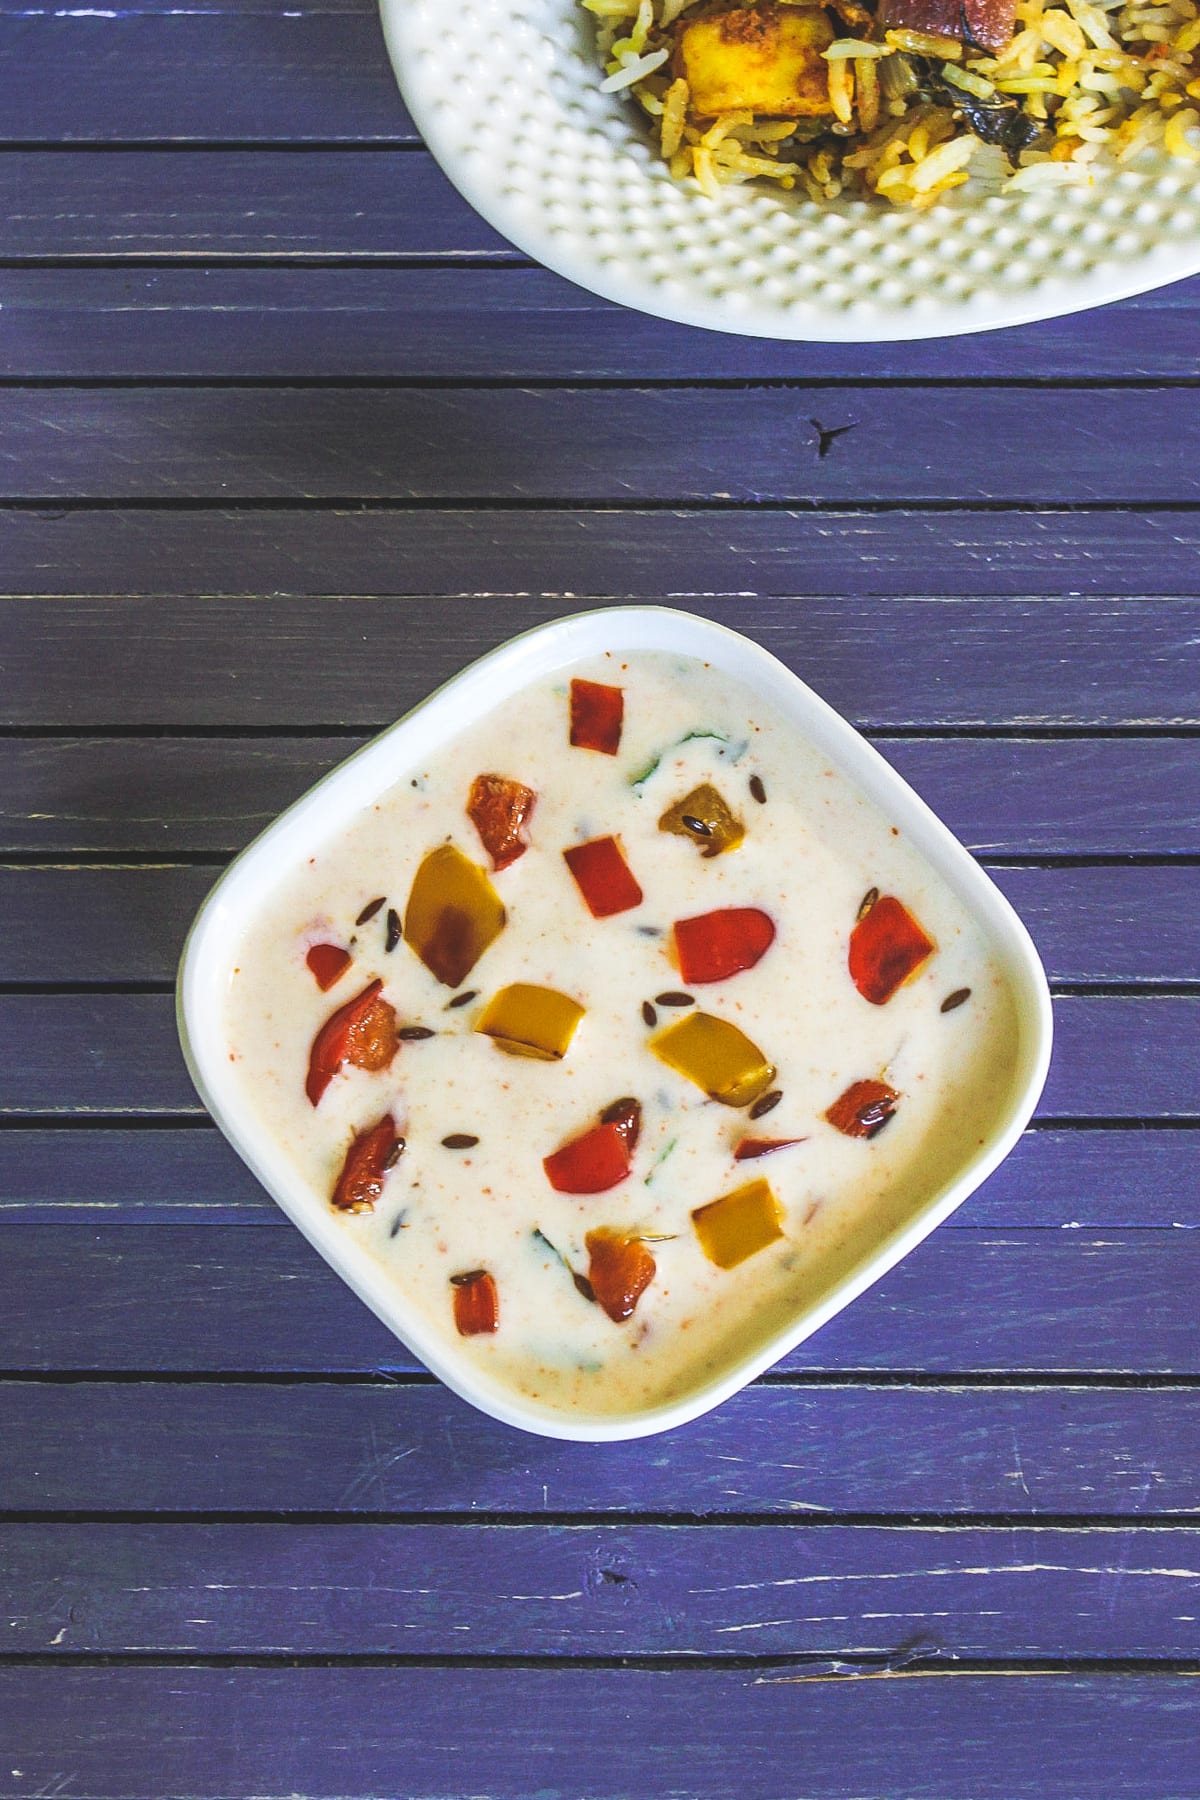 Capsicum raita in a bowl with biryani.